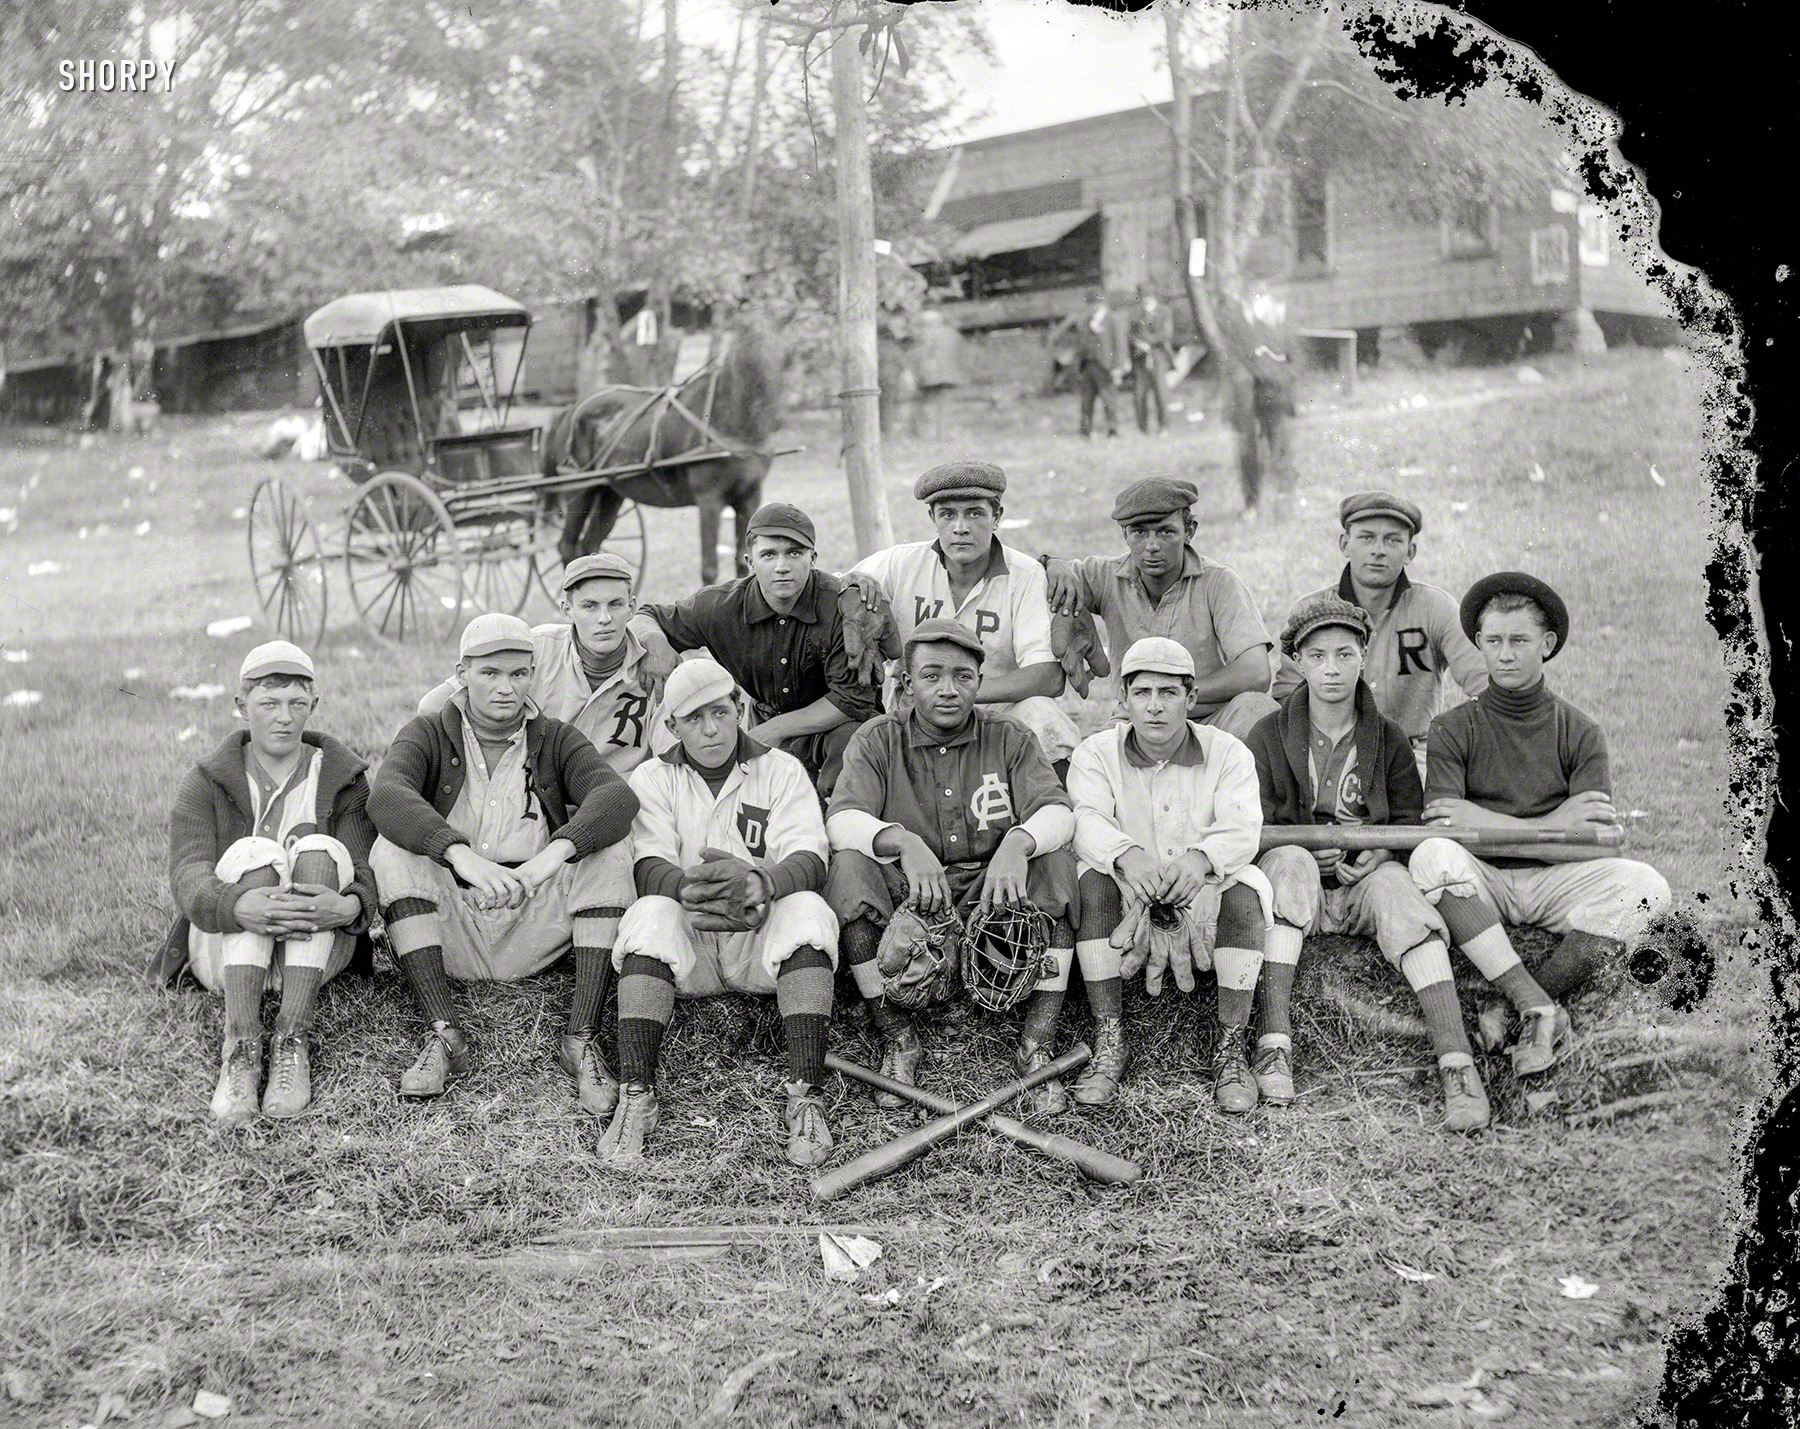 1910baseball.jpg